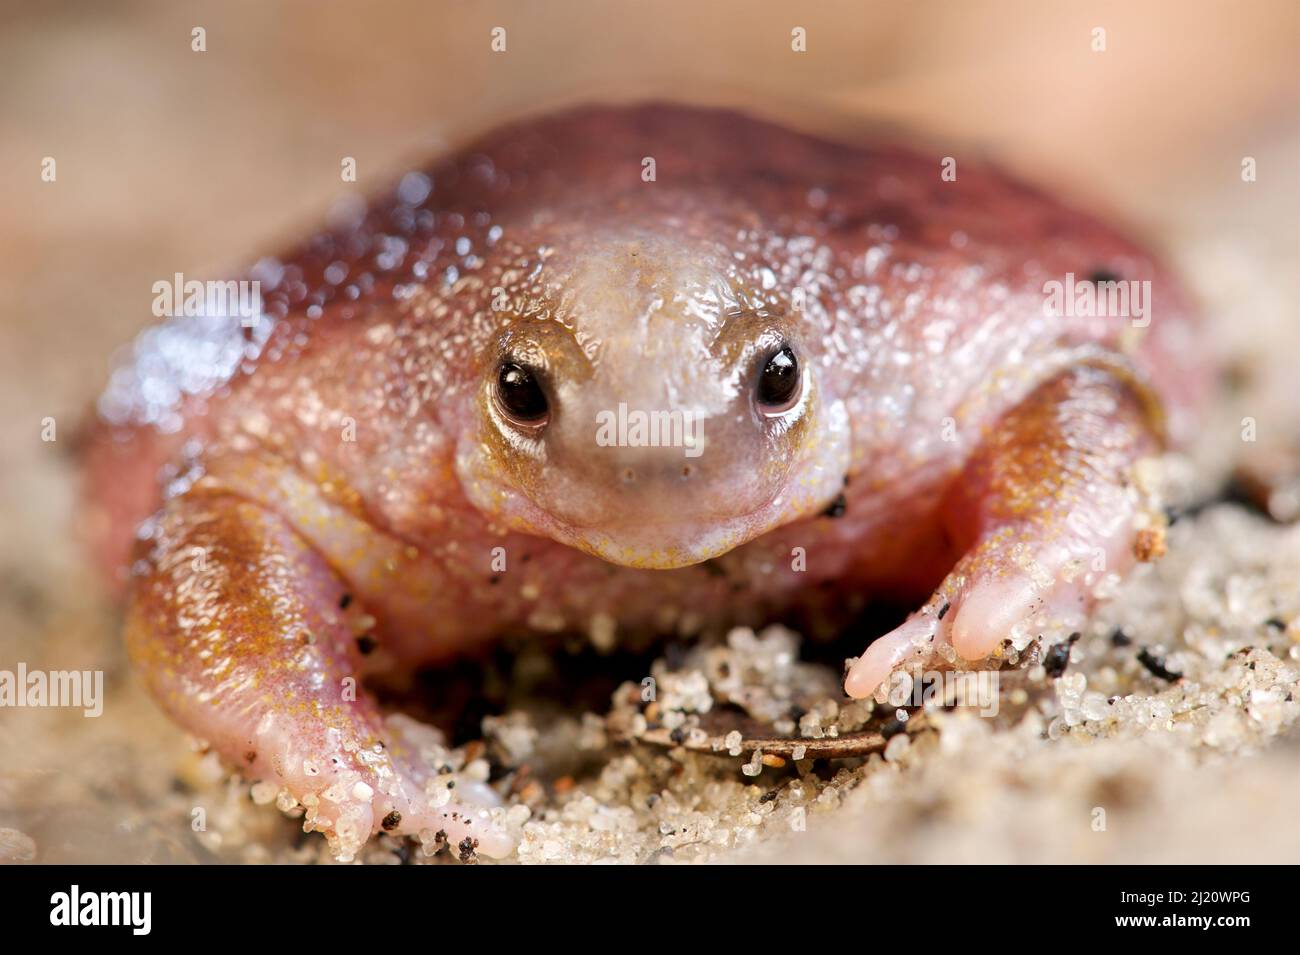 Portrait de la grenouille des tortues (Myobatrachus gouldii). Perth, Australie occidentale. Octobre. Banque D'Images